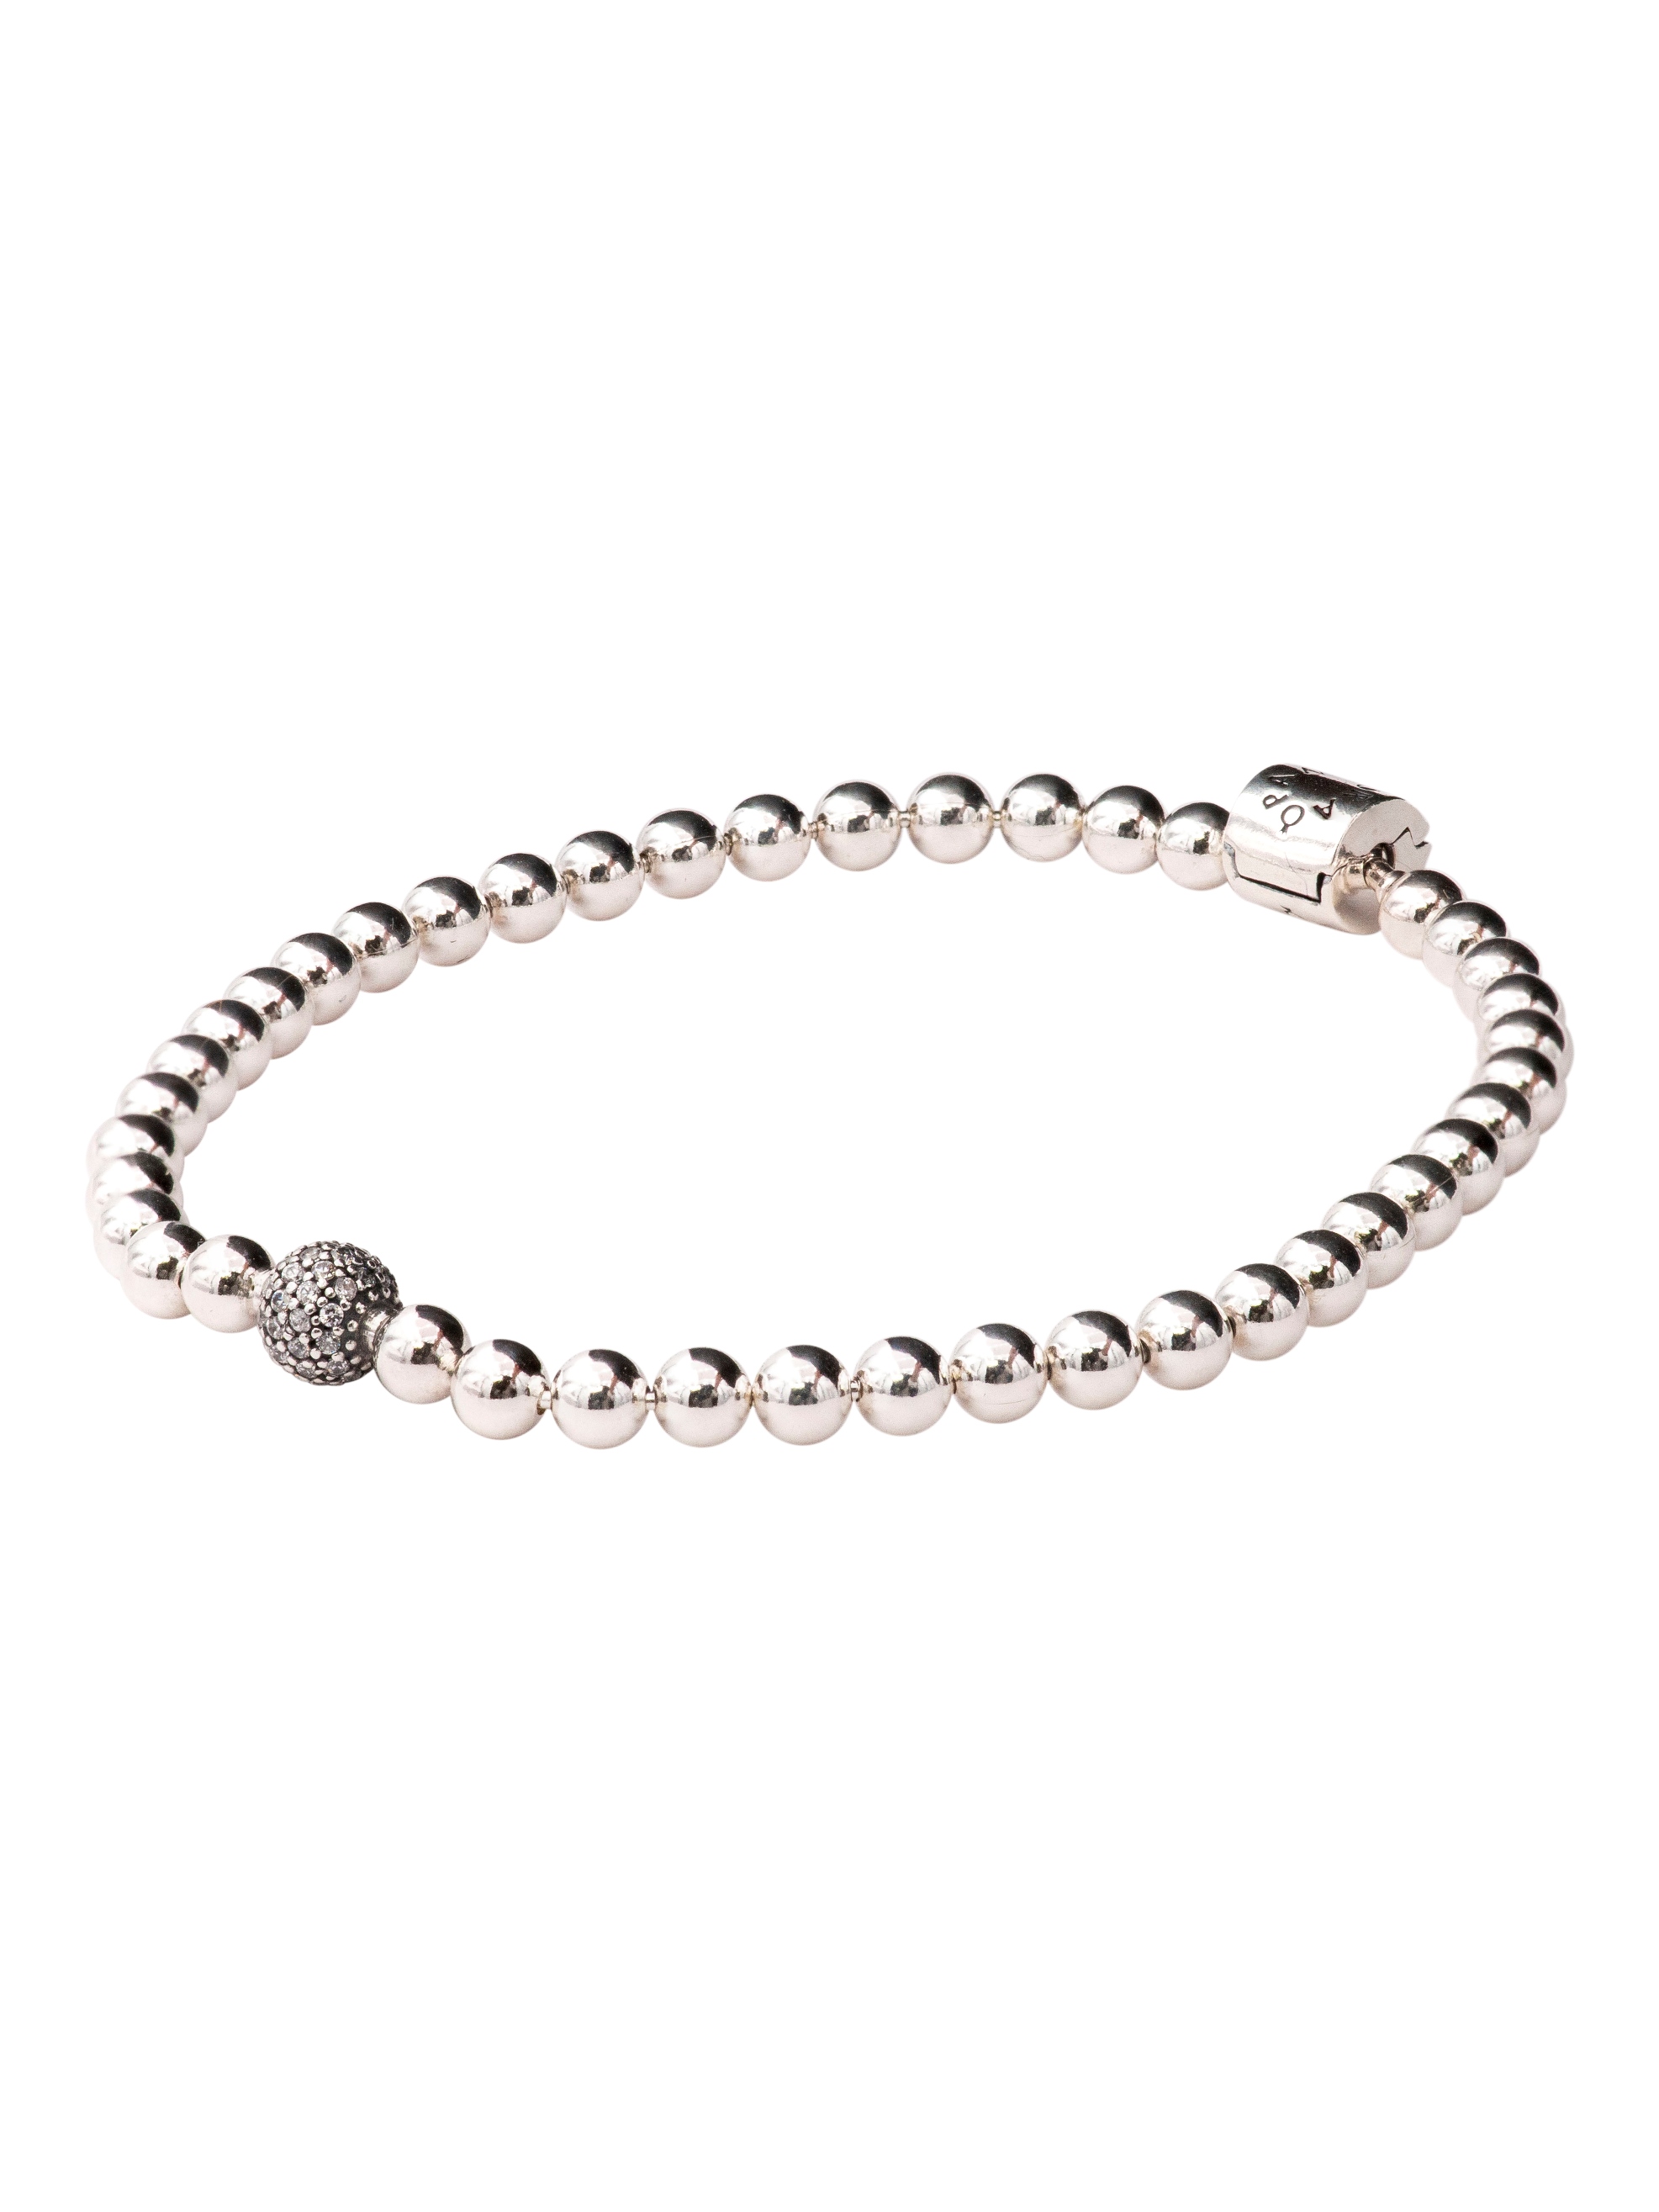 PANDORA Beads & Pave Bracelet - Size: 17